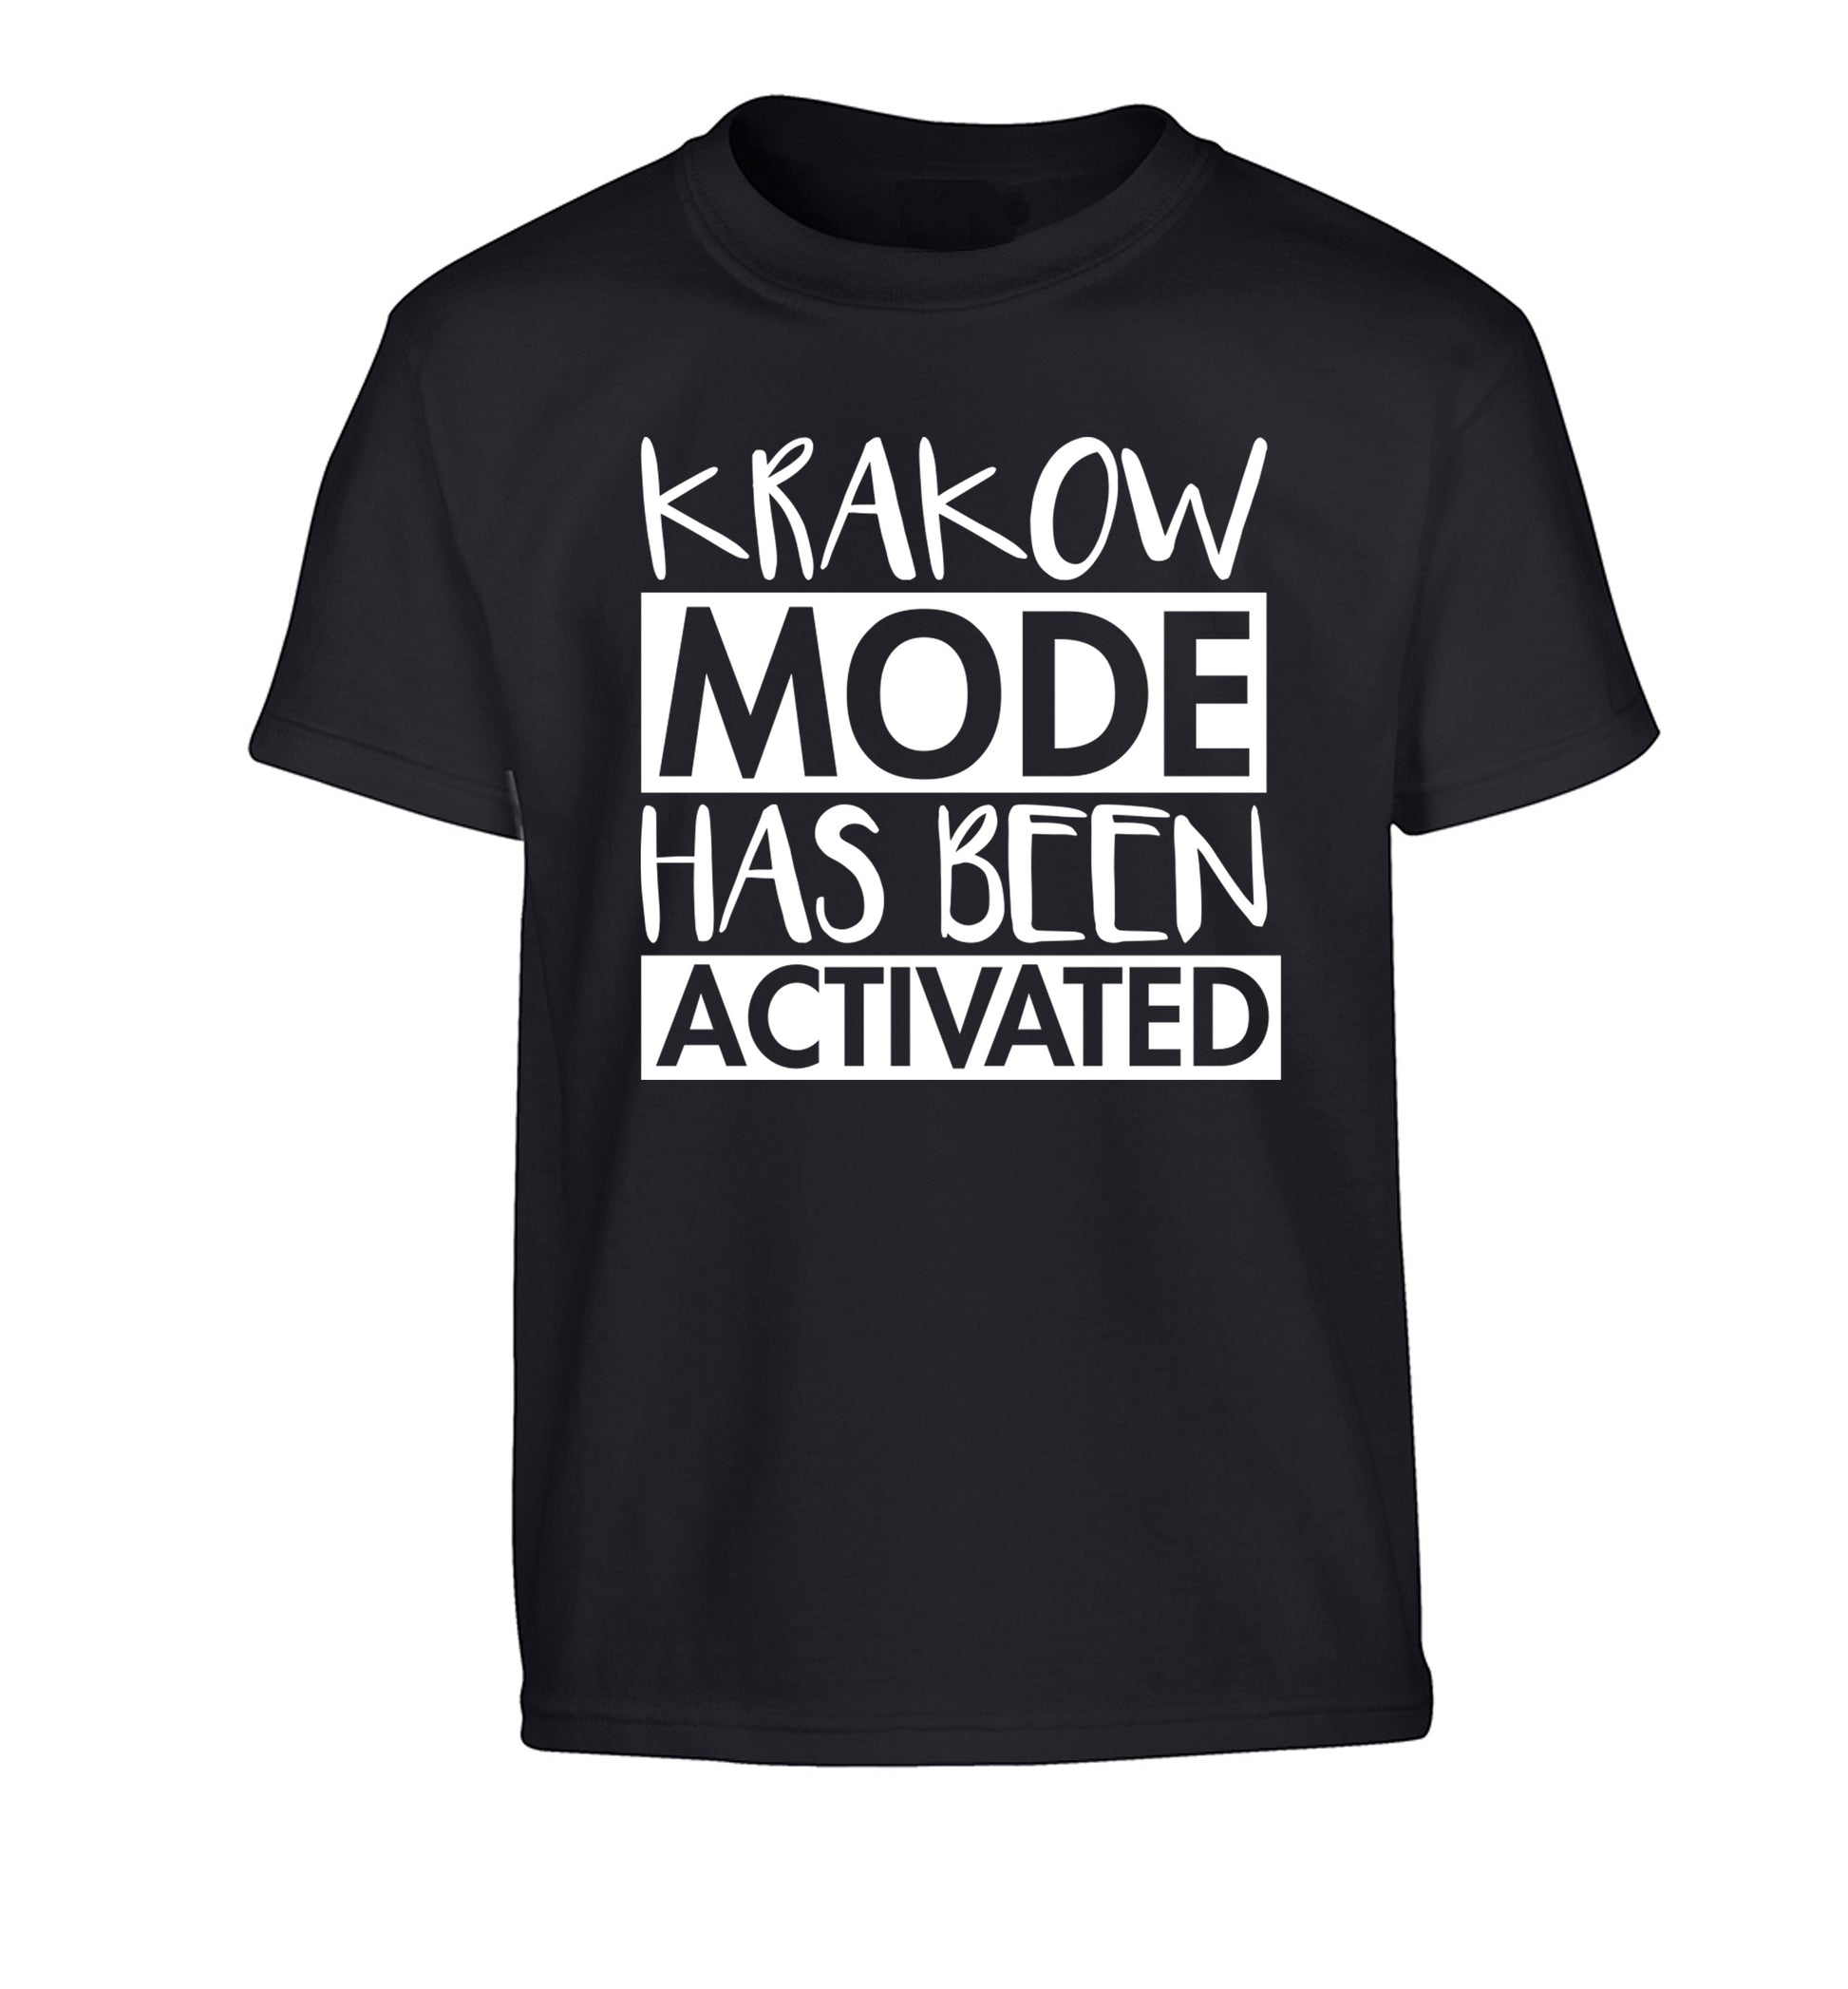 Krakow mode has been activated Children's black Tshirt 12-13 Years